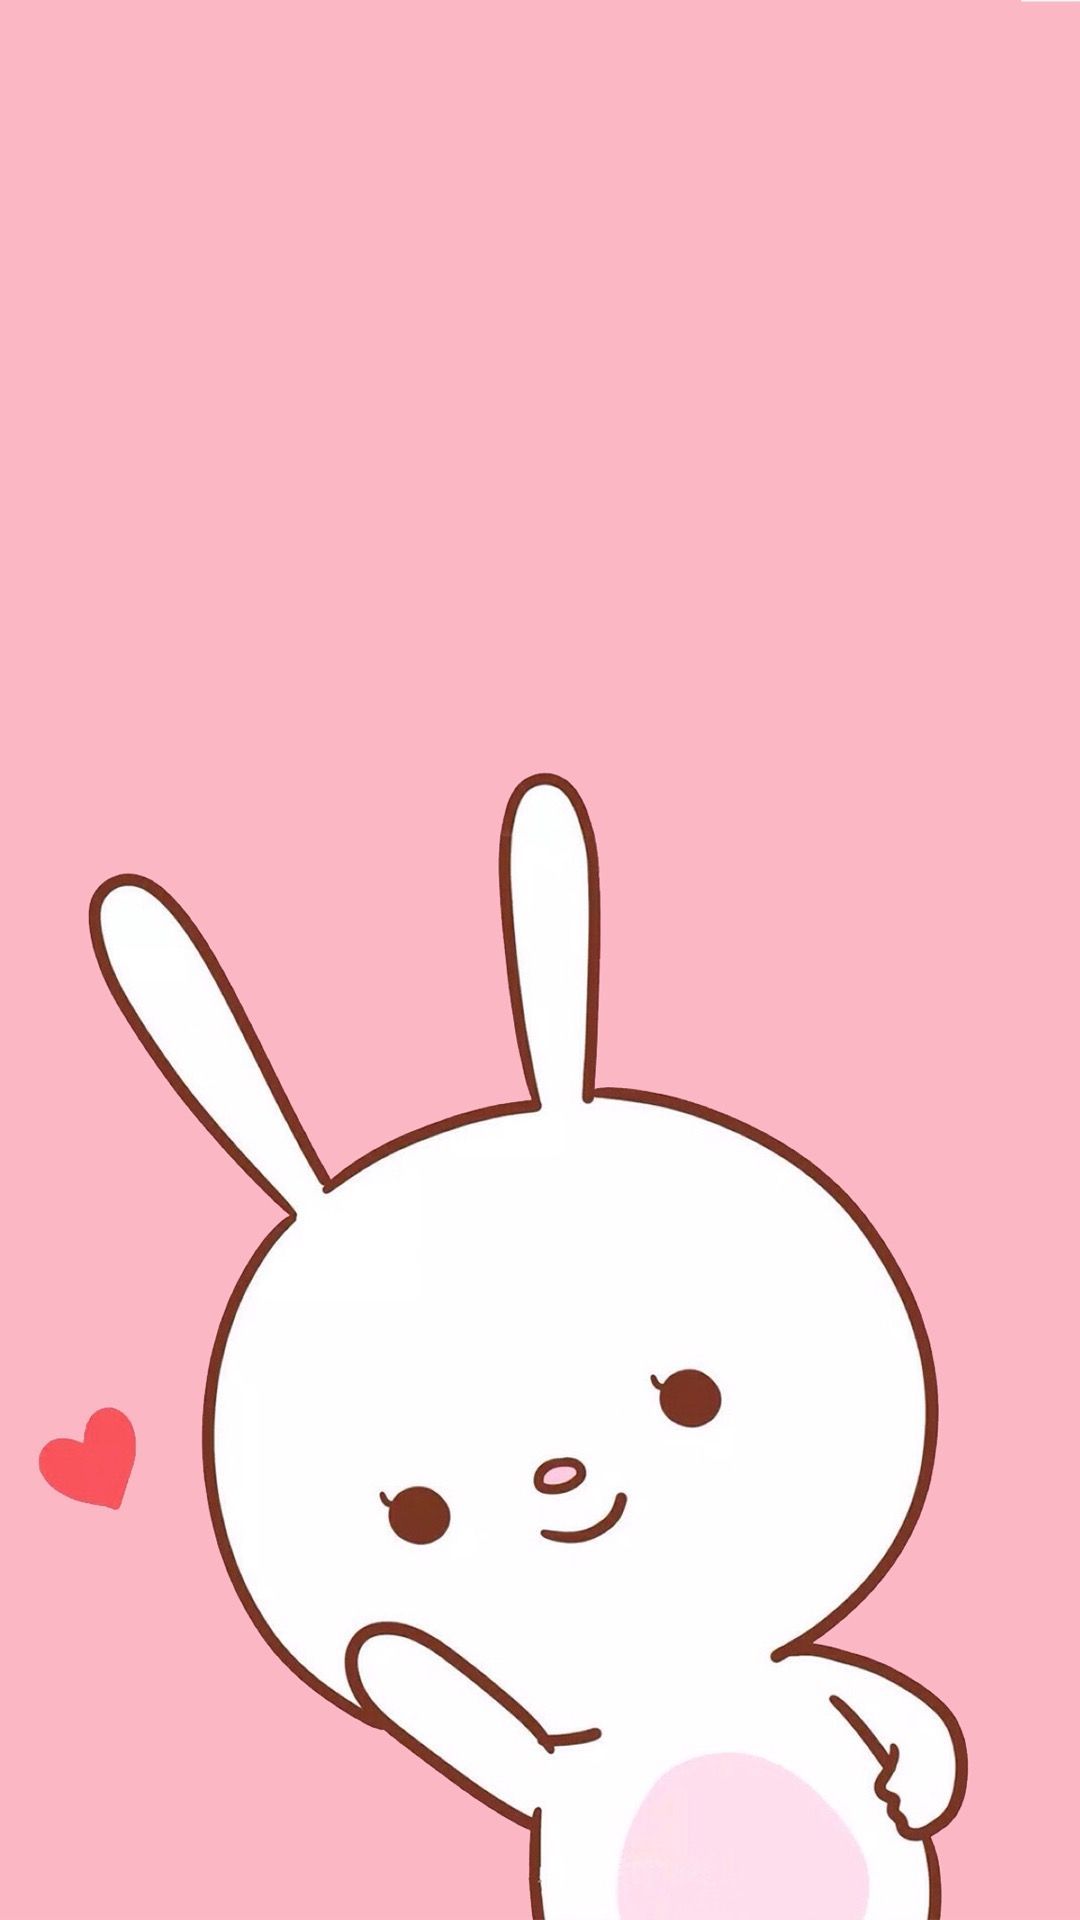 Cute Cartoon Bunny Wallpaper Free Cute Cartoon Bunny